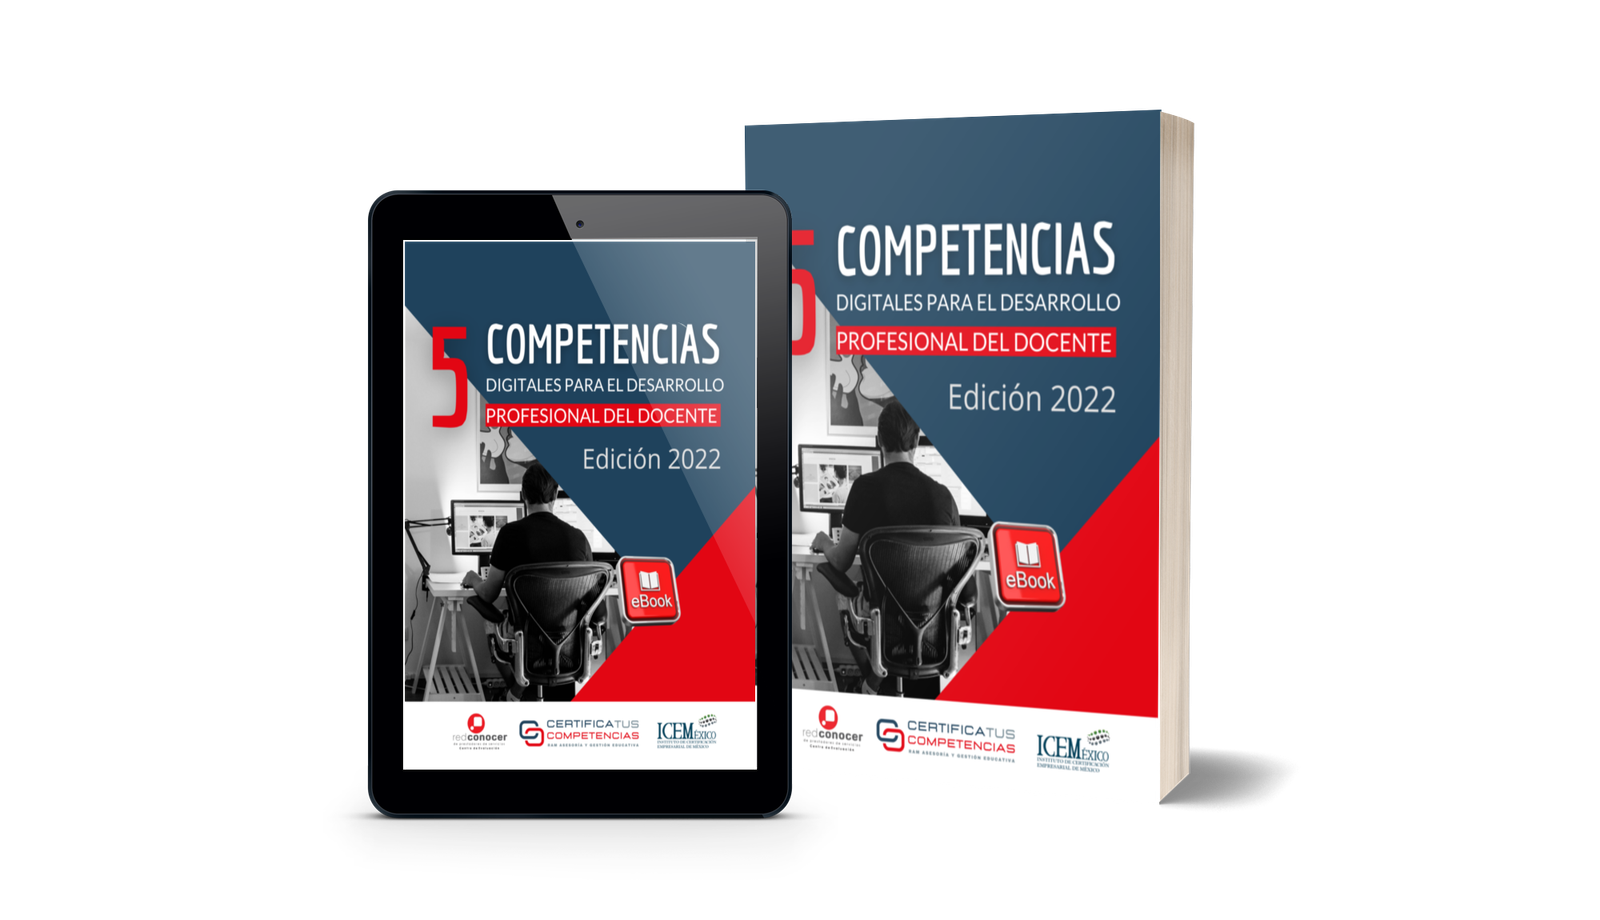 e-book 5 competencias digitales para el desarrollo profesional del docente